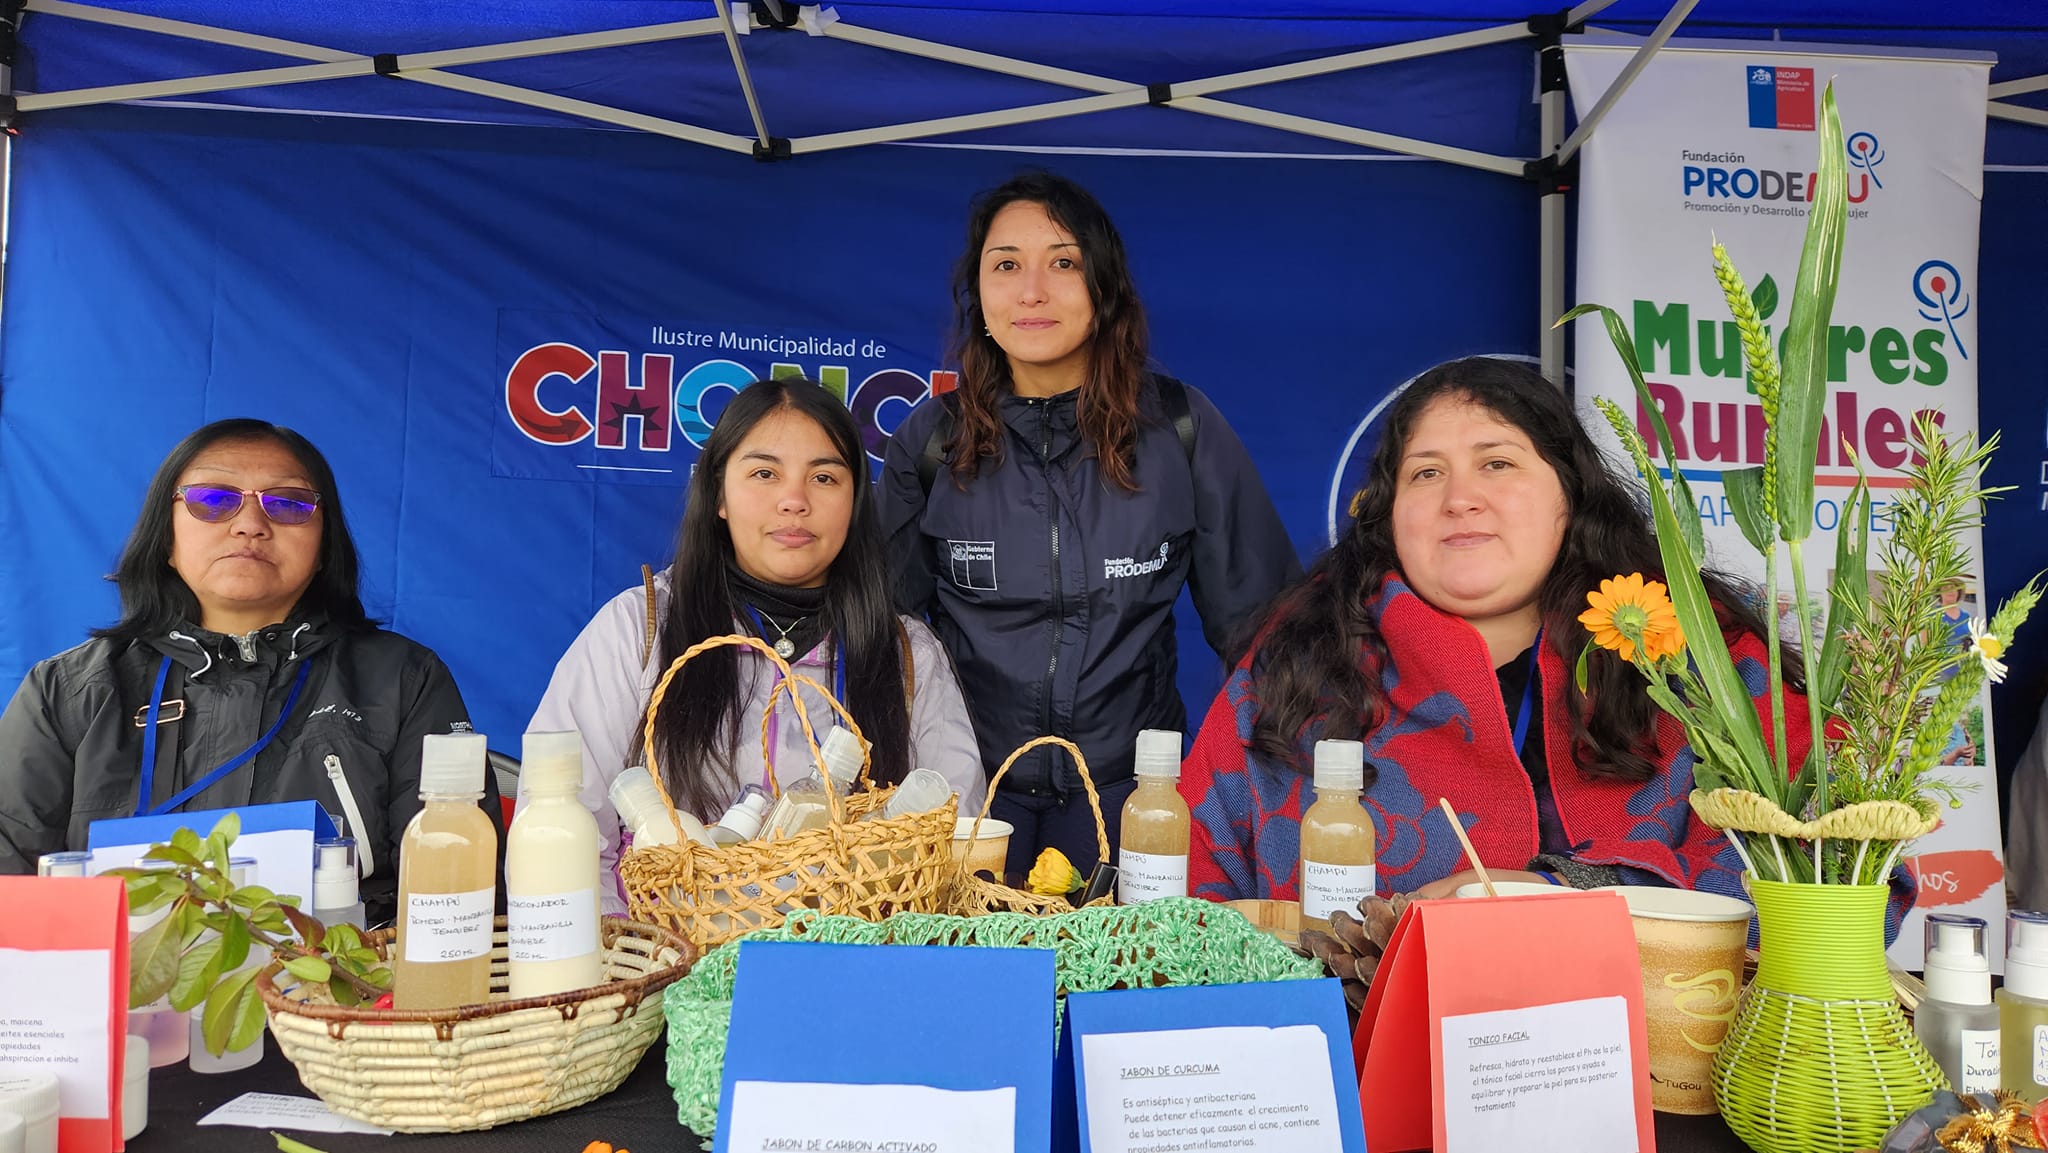 Chonchinas fueron reconocidas en la región en el “Día Internacional de las Mujeres Rurales”